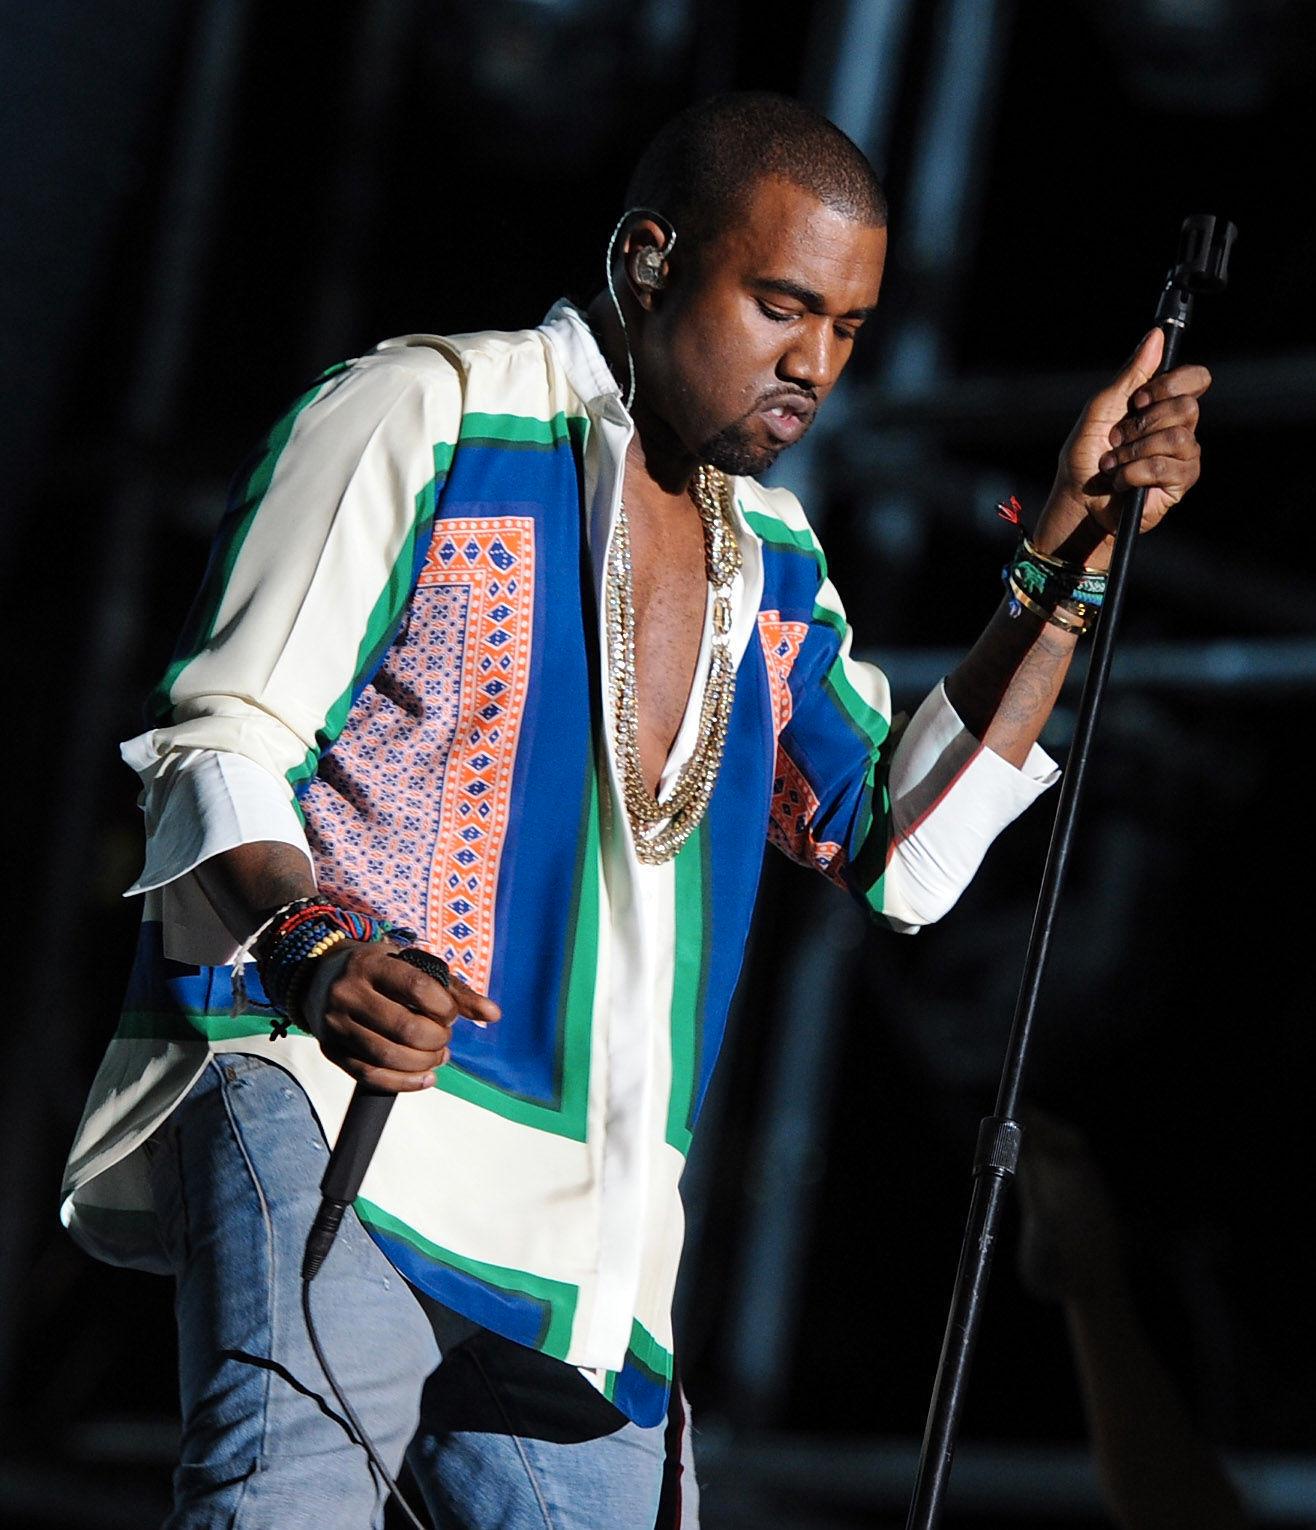 FESTIVALKLAR: Kanye West i skjorte fra Celine på Coachella i 2011. Foto: AFP